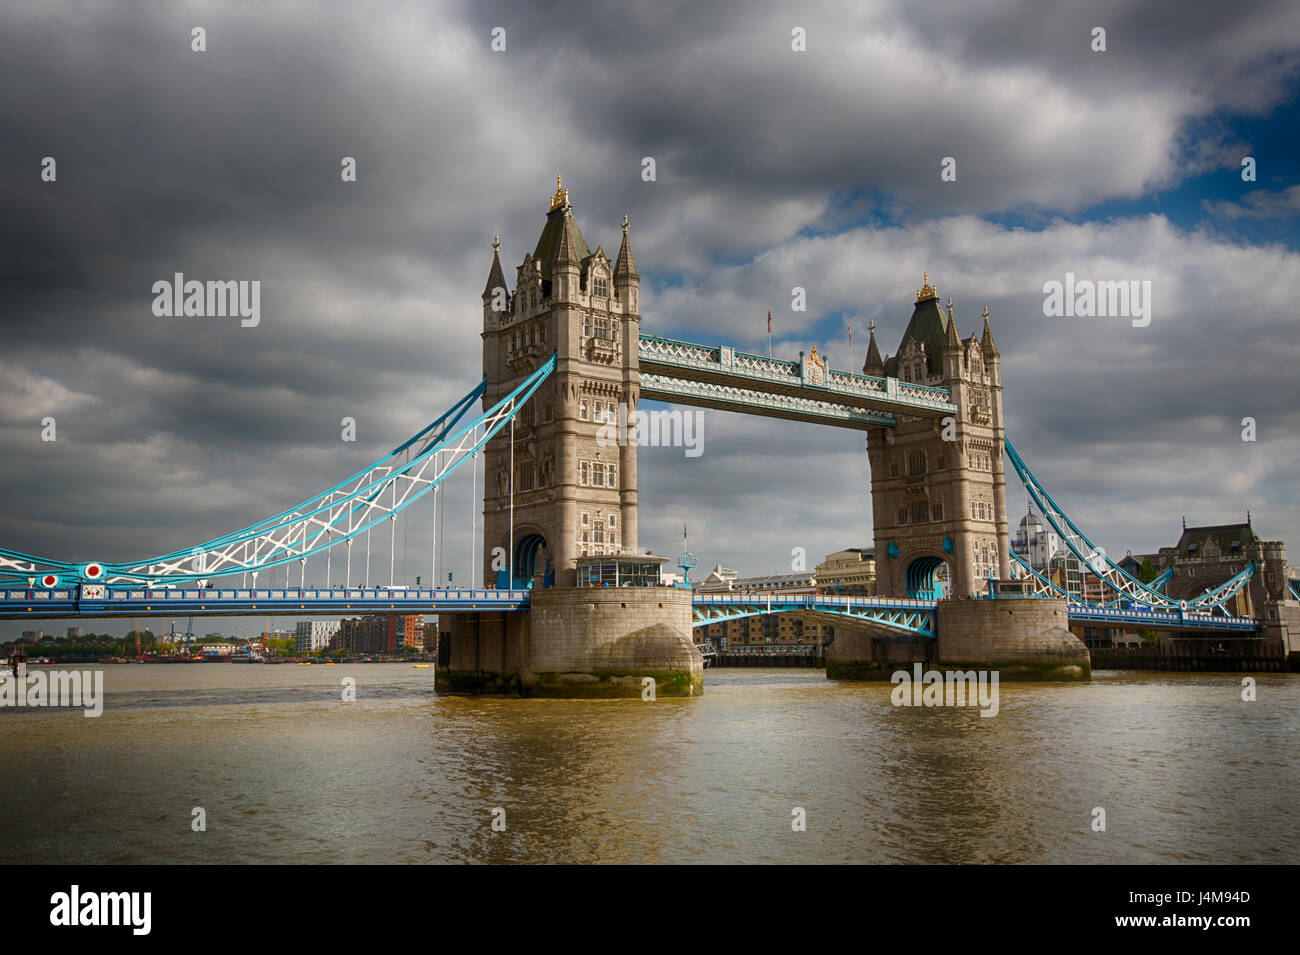 Vista diurna del lado oeste del puente de la torre, Londres, Inglaterra, Reino Unido desde el lado norte del río Támesis, mirando al oriente. Imagen HDR de 3 exposu Foto de stock